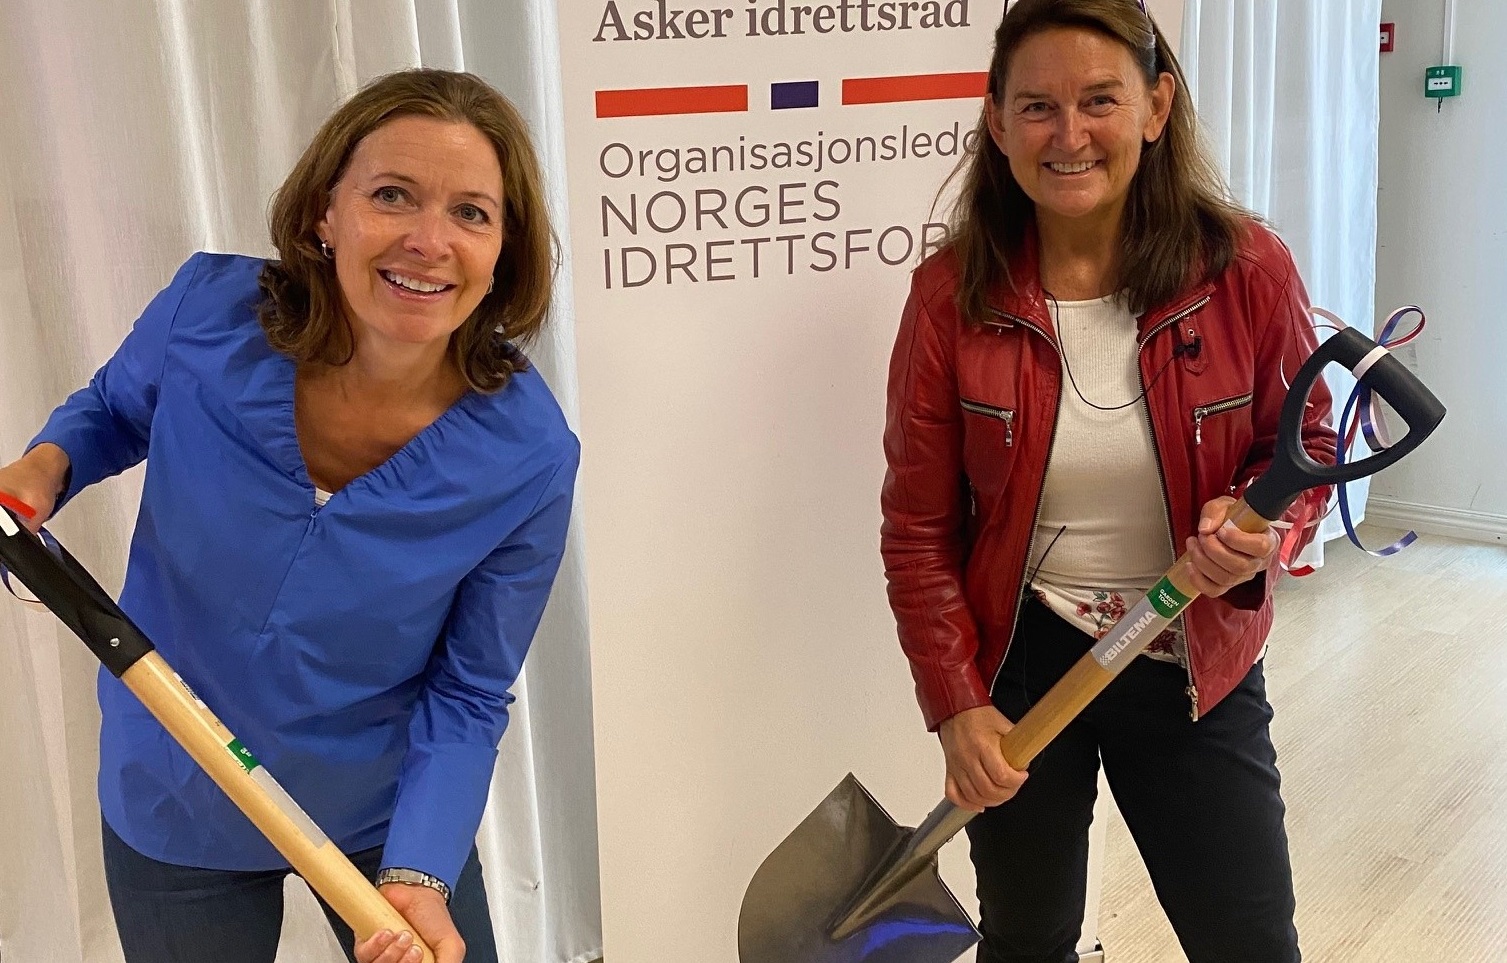 Kari Sofie Bjørnsen (leder hovedutvalg medborgerskap) og Kristin Marie Felde (direktør for medborgerskap i Asker kommune) mottok spade som symbol på anleggsarbeid og dugnad under anleggskonferansen i Asker.